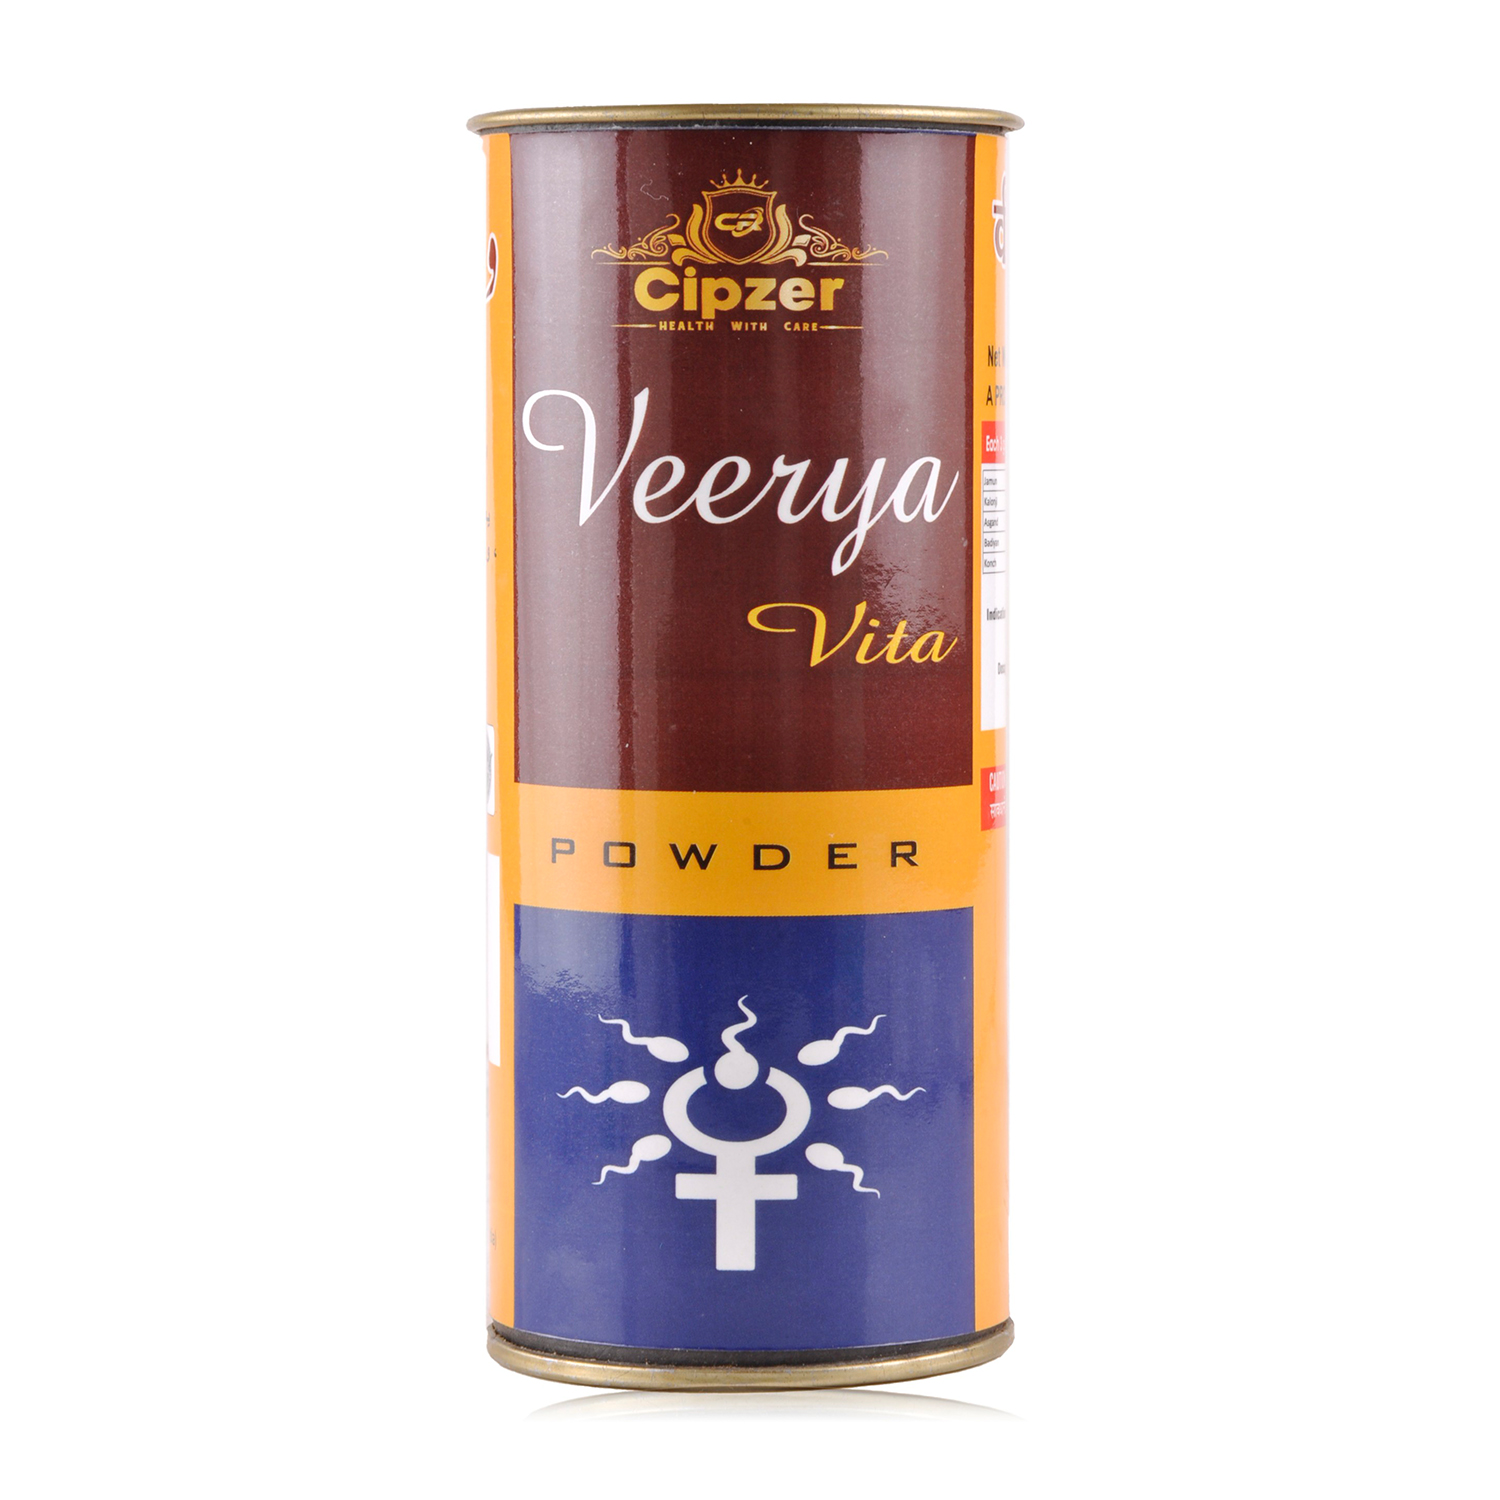 Buy Cipzer Veerya Vita Powder at Best Price Online